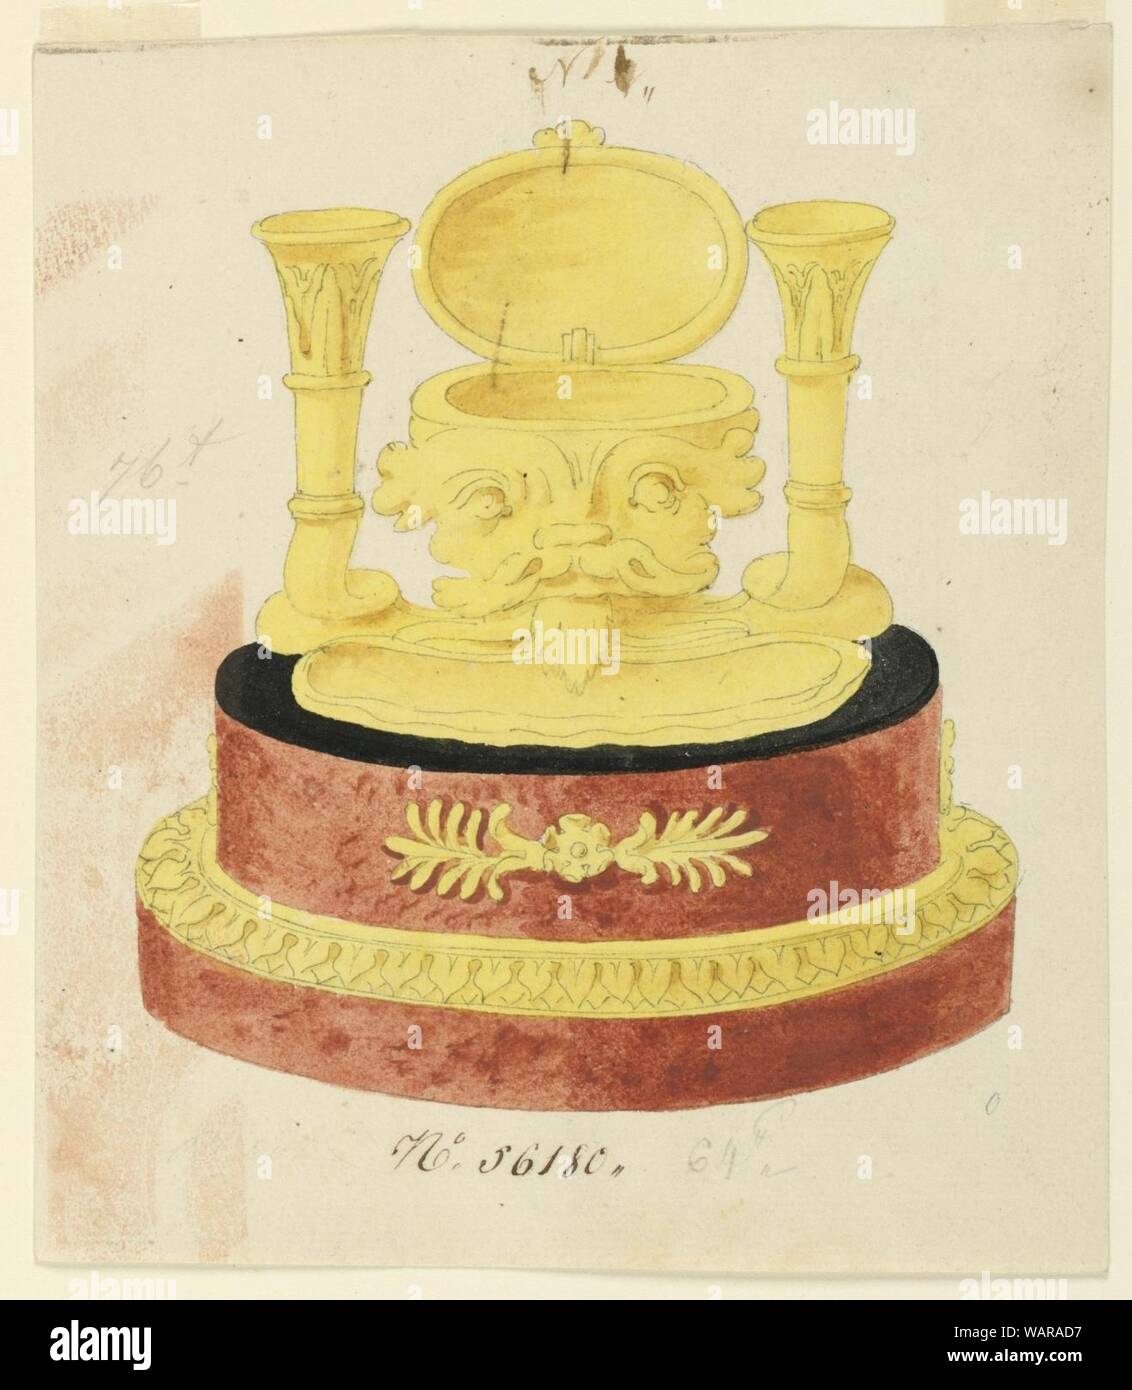 Dessin, conception de stand d'encre, 1800-1825 Banque D'Images